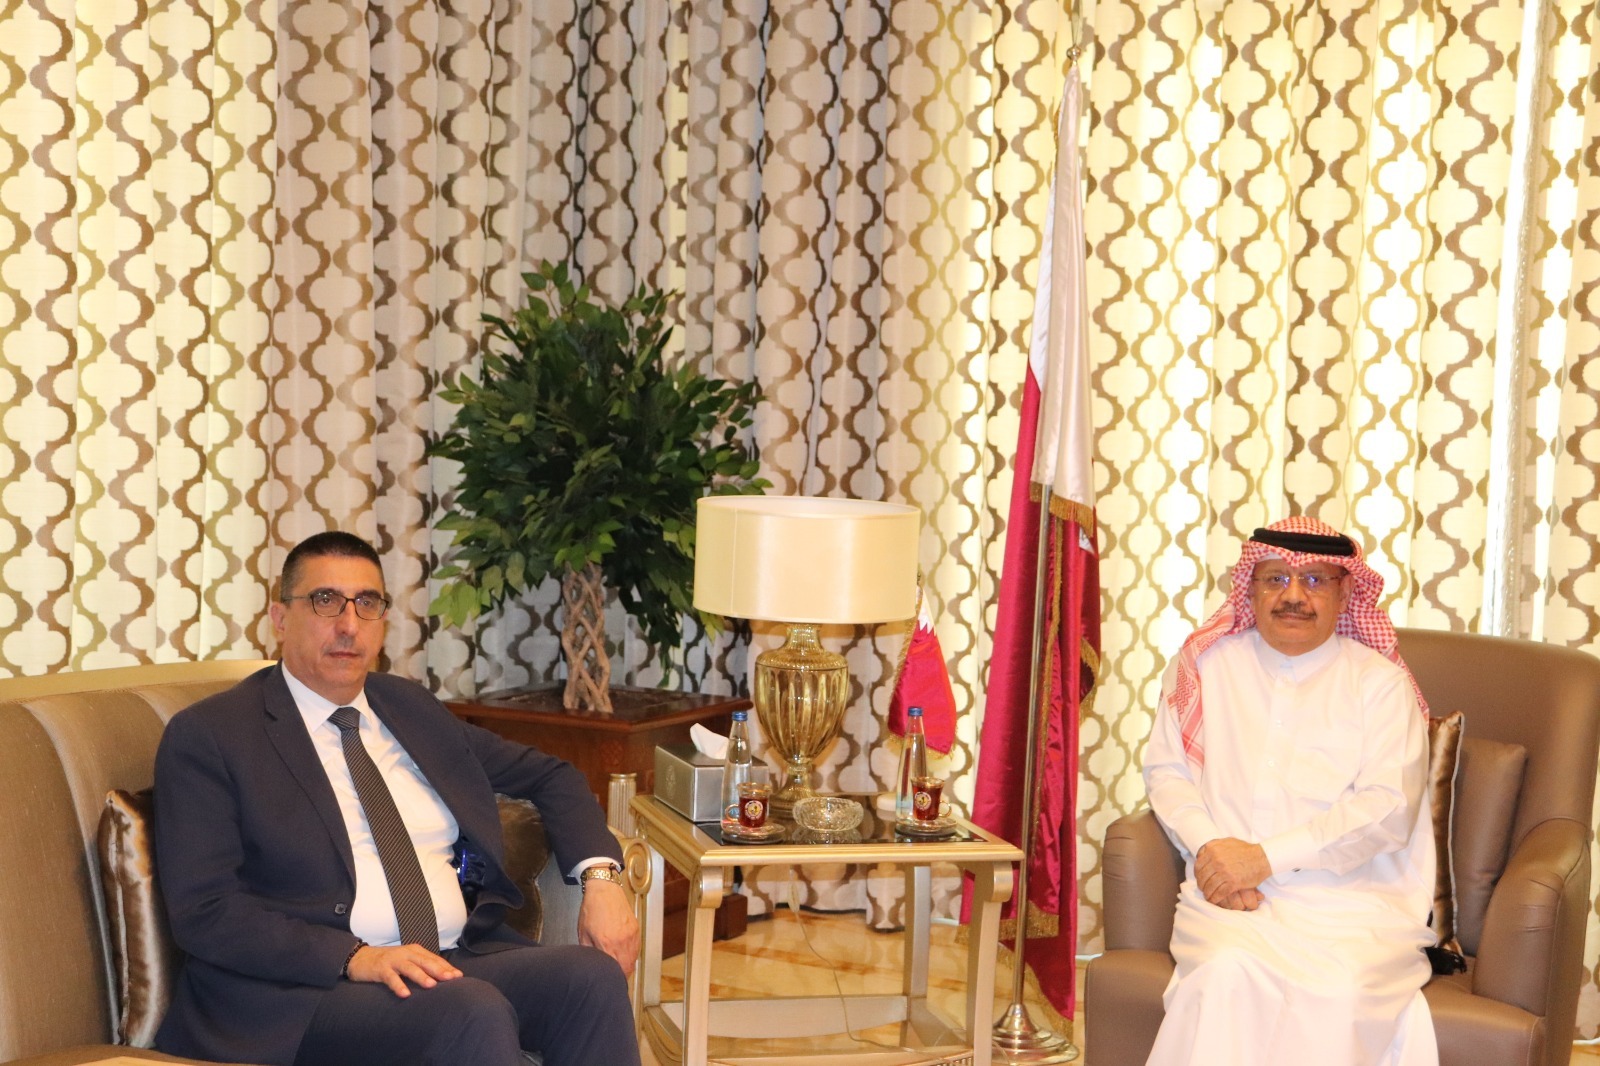 وزير الشؤون الاجتماعية اللبناني يجتمع مع سفير دولة قطر